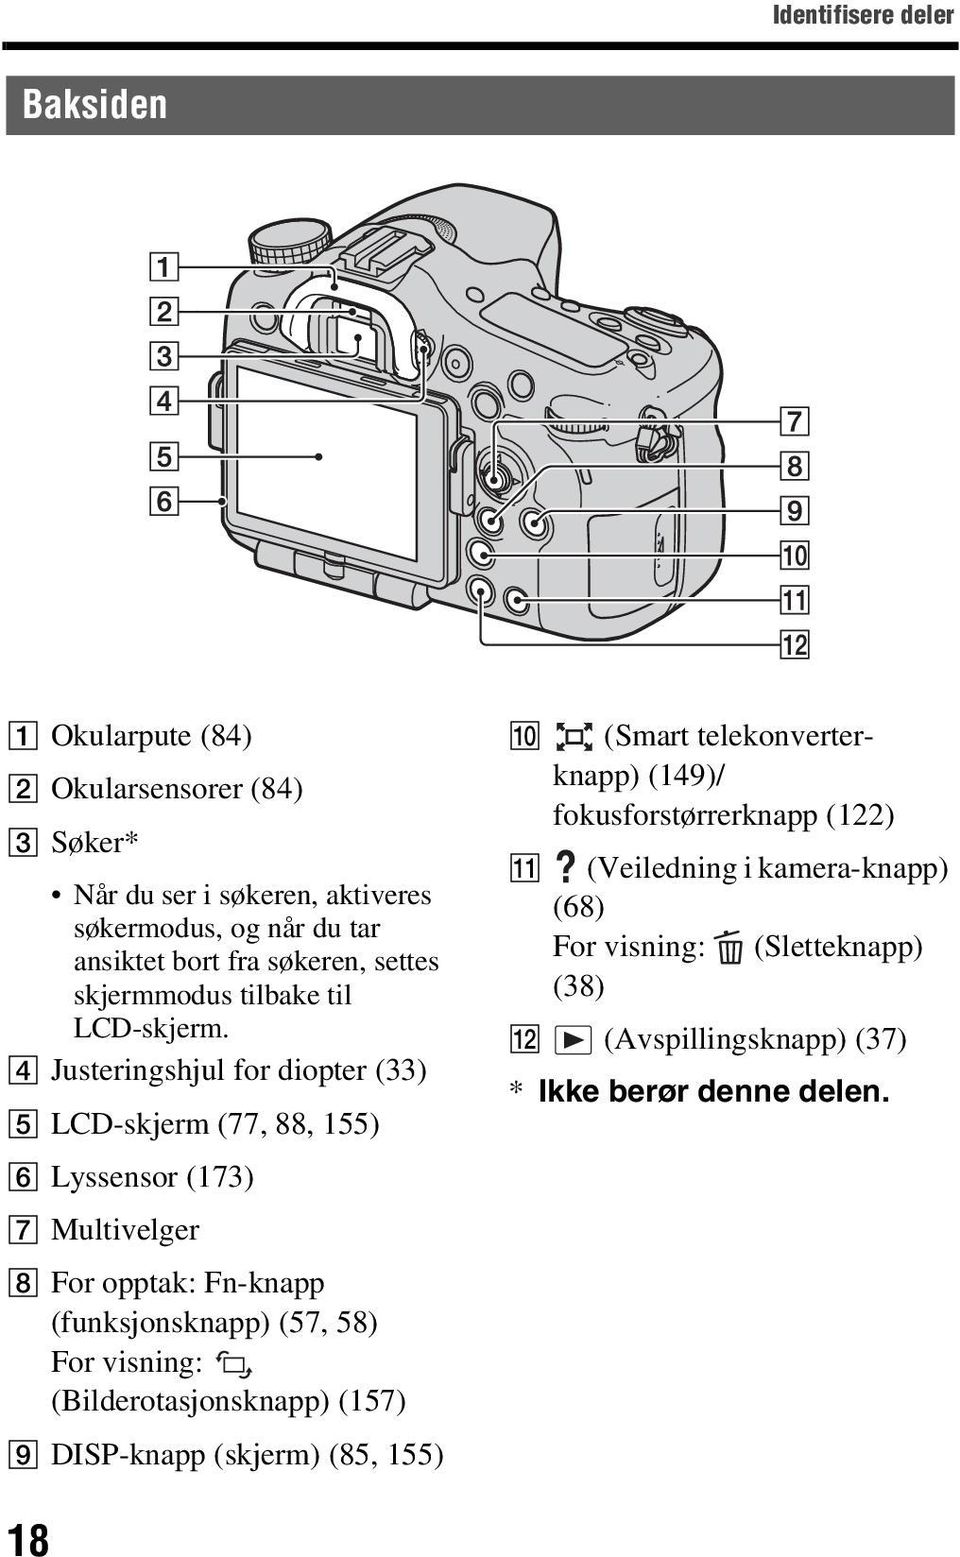 D Justeringshjul for diopter (33) E LCD-skjerm (77, 88, 155) F Lyssensor (173) G Multivelger H For opptak: Fn-knapp (funksjonsknapp) (57, 58) For